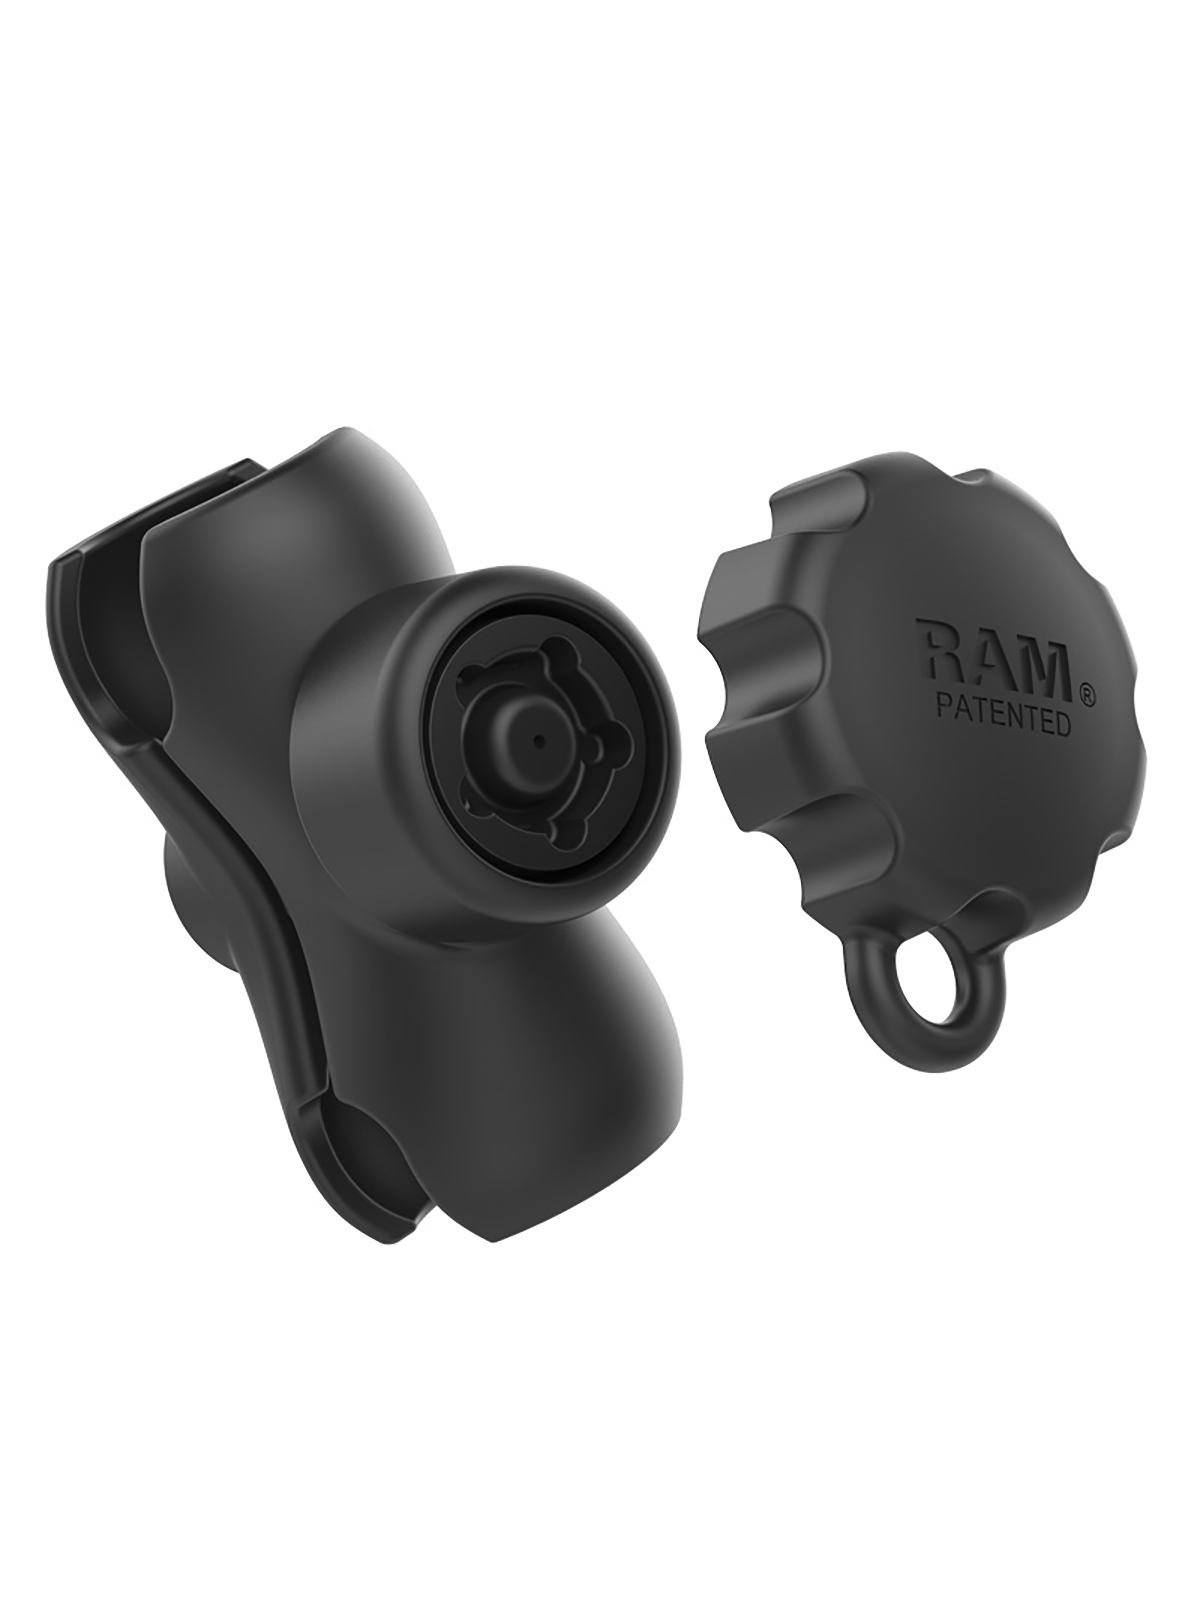 RAM Mounts kurzer Verbindungsarm mit Pin-Lock Sicherung (5-Pin) - C-Kugel (1,5 Zoll), ca. 90 mm